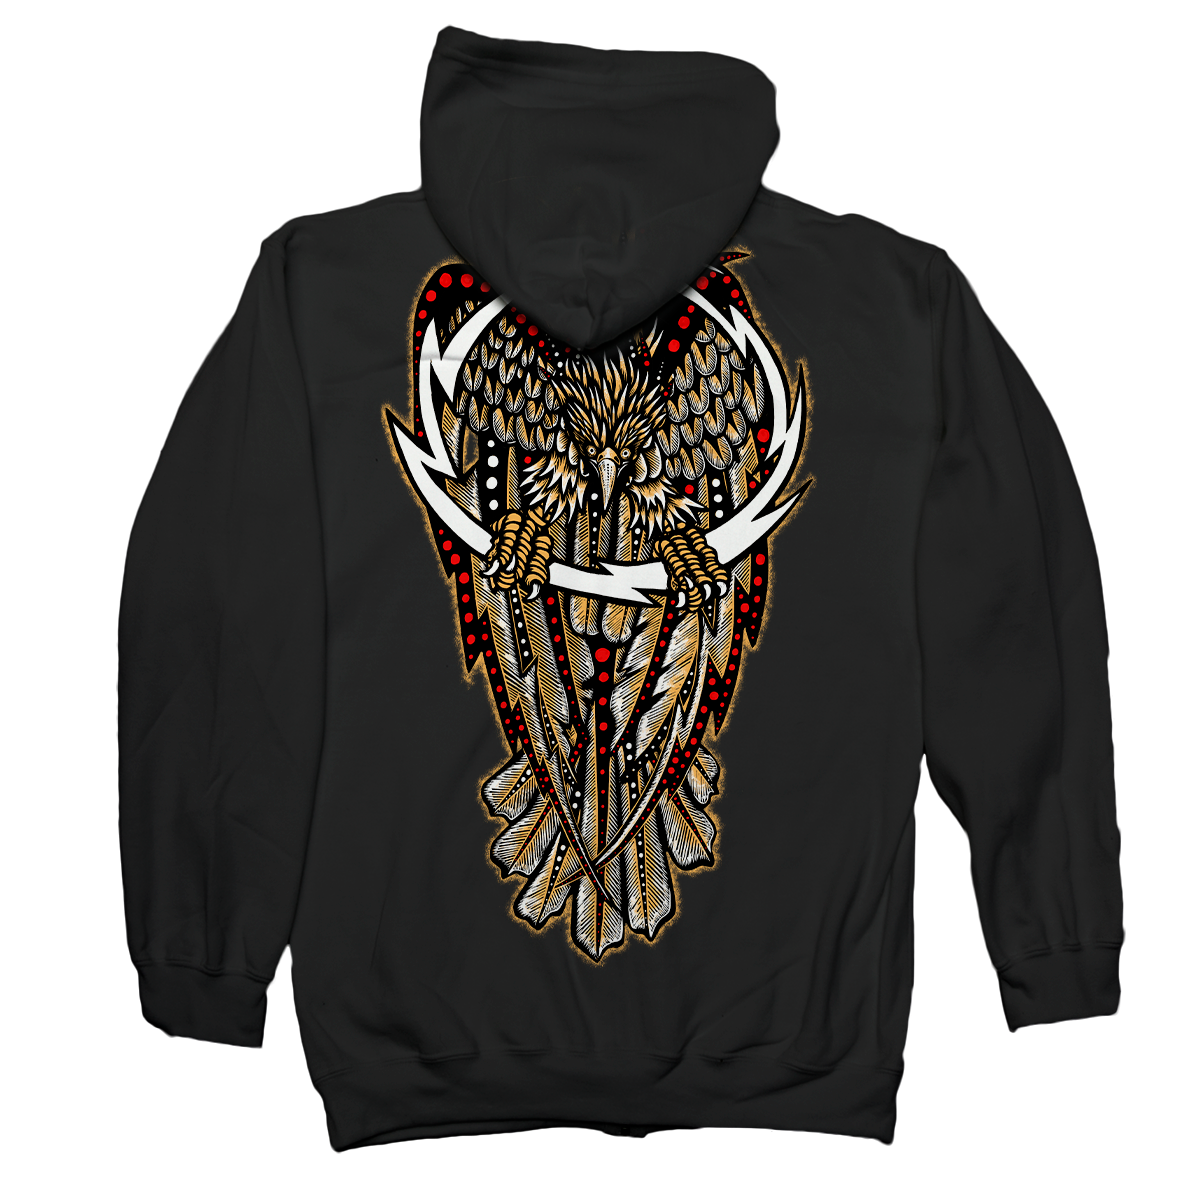 DENNIS MCNETT "Thunder Eagle" Black Hooded Sweatshirt